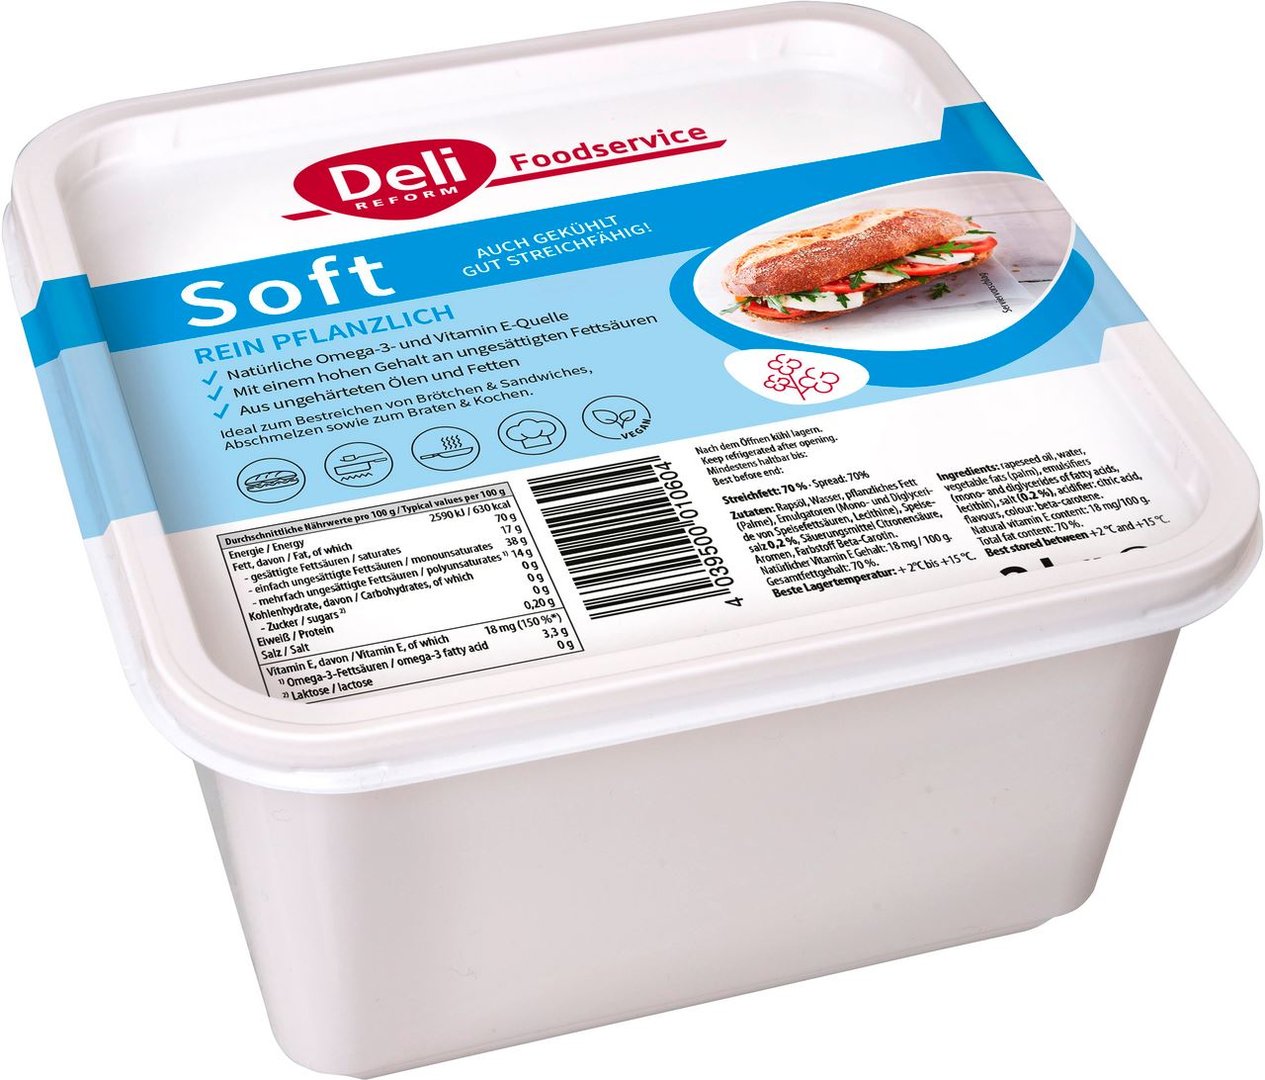 Deli Reform - Das Original, Soft Margarine - 2 kg Packung